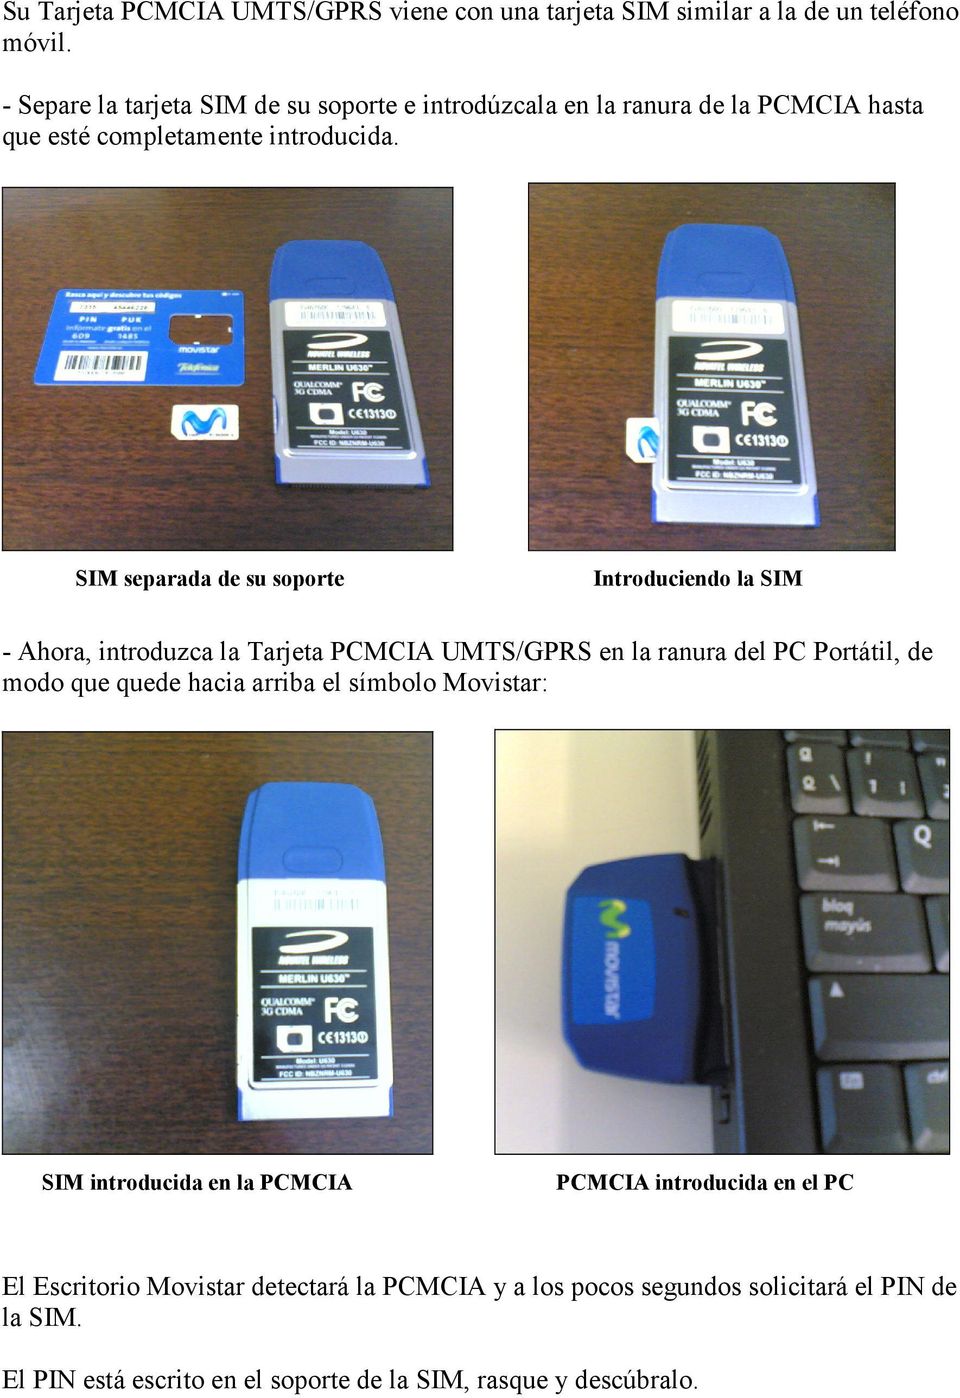 SIM separada de su soporte Introduciendo la SIM - Ahora, introduzca la Tarjeta PCMCIA UMTS/GPRS en la ranura del PC Portátil, de modo que quede hacia